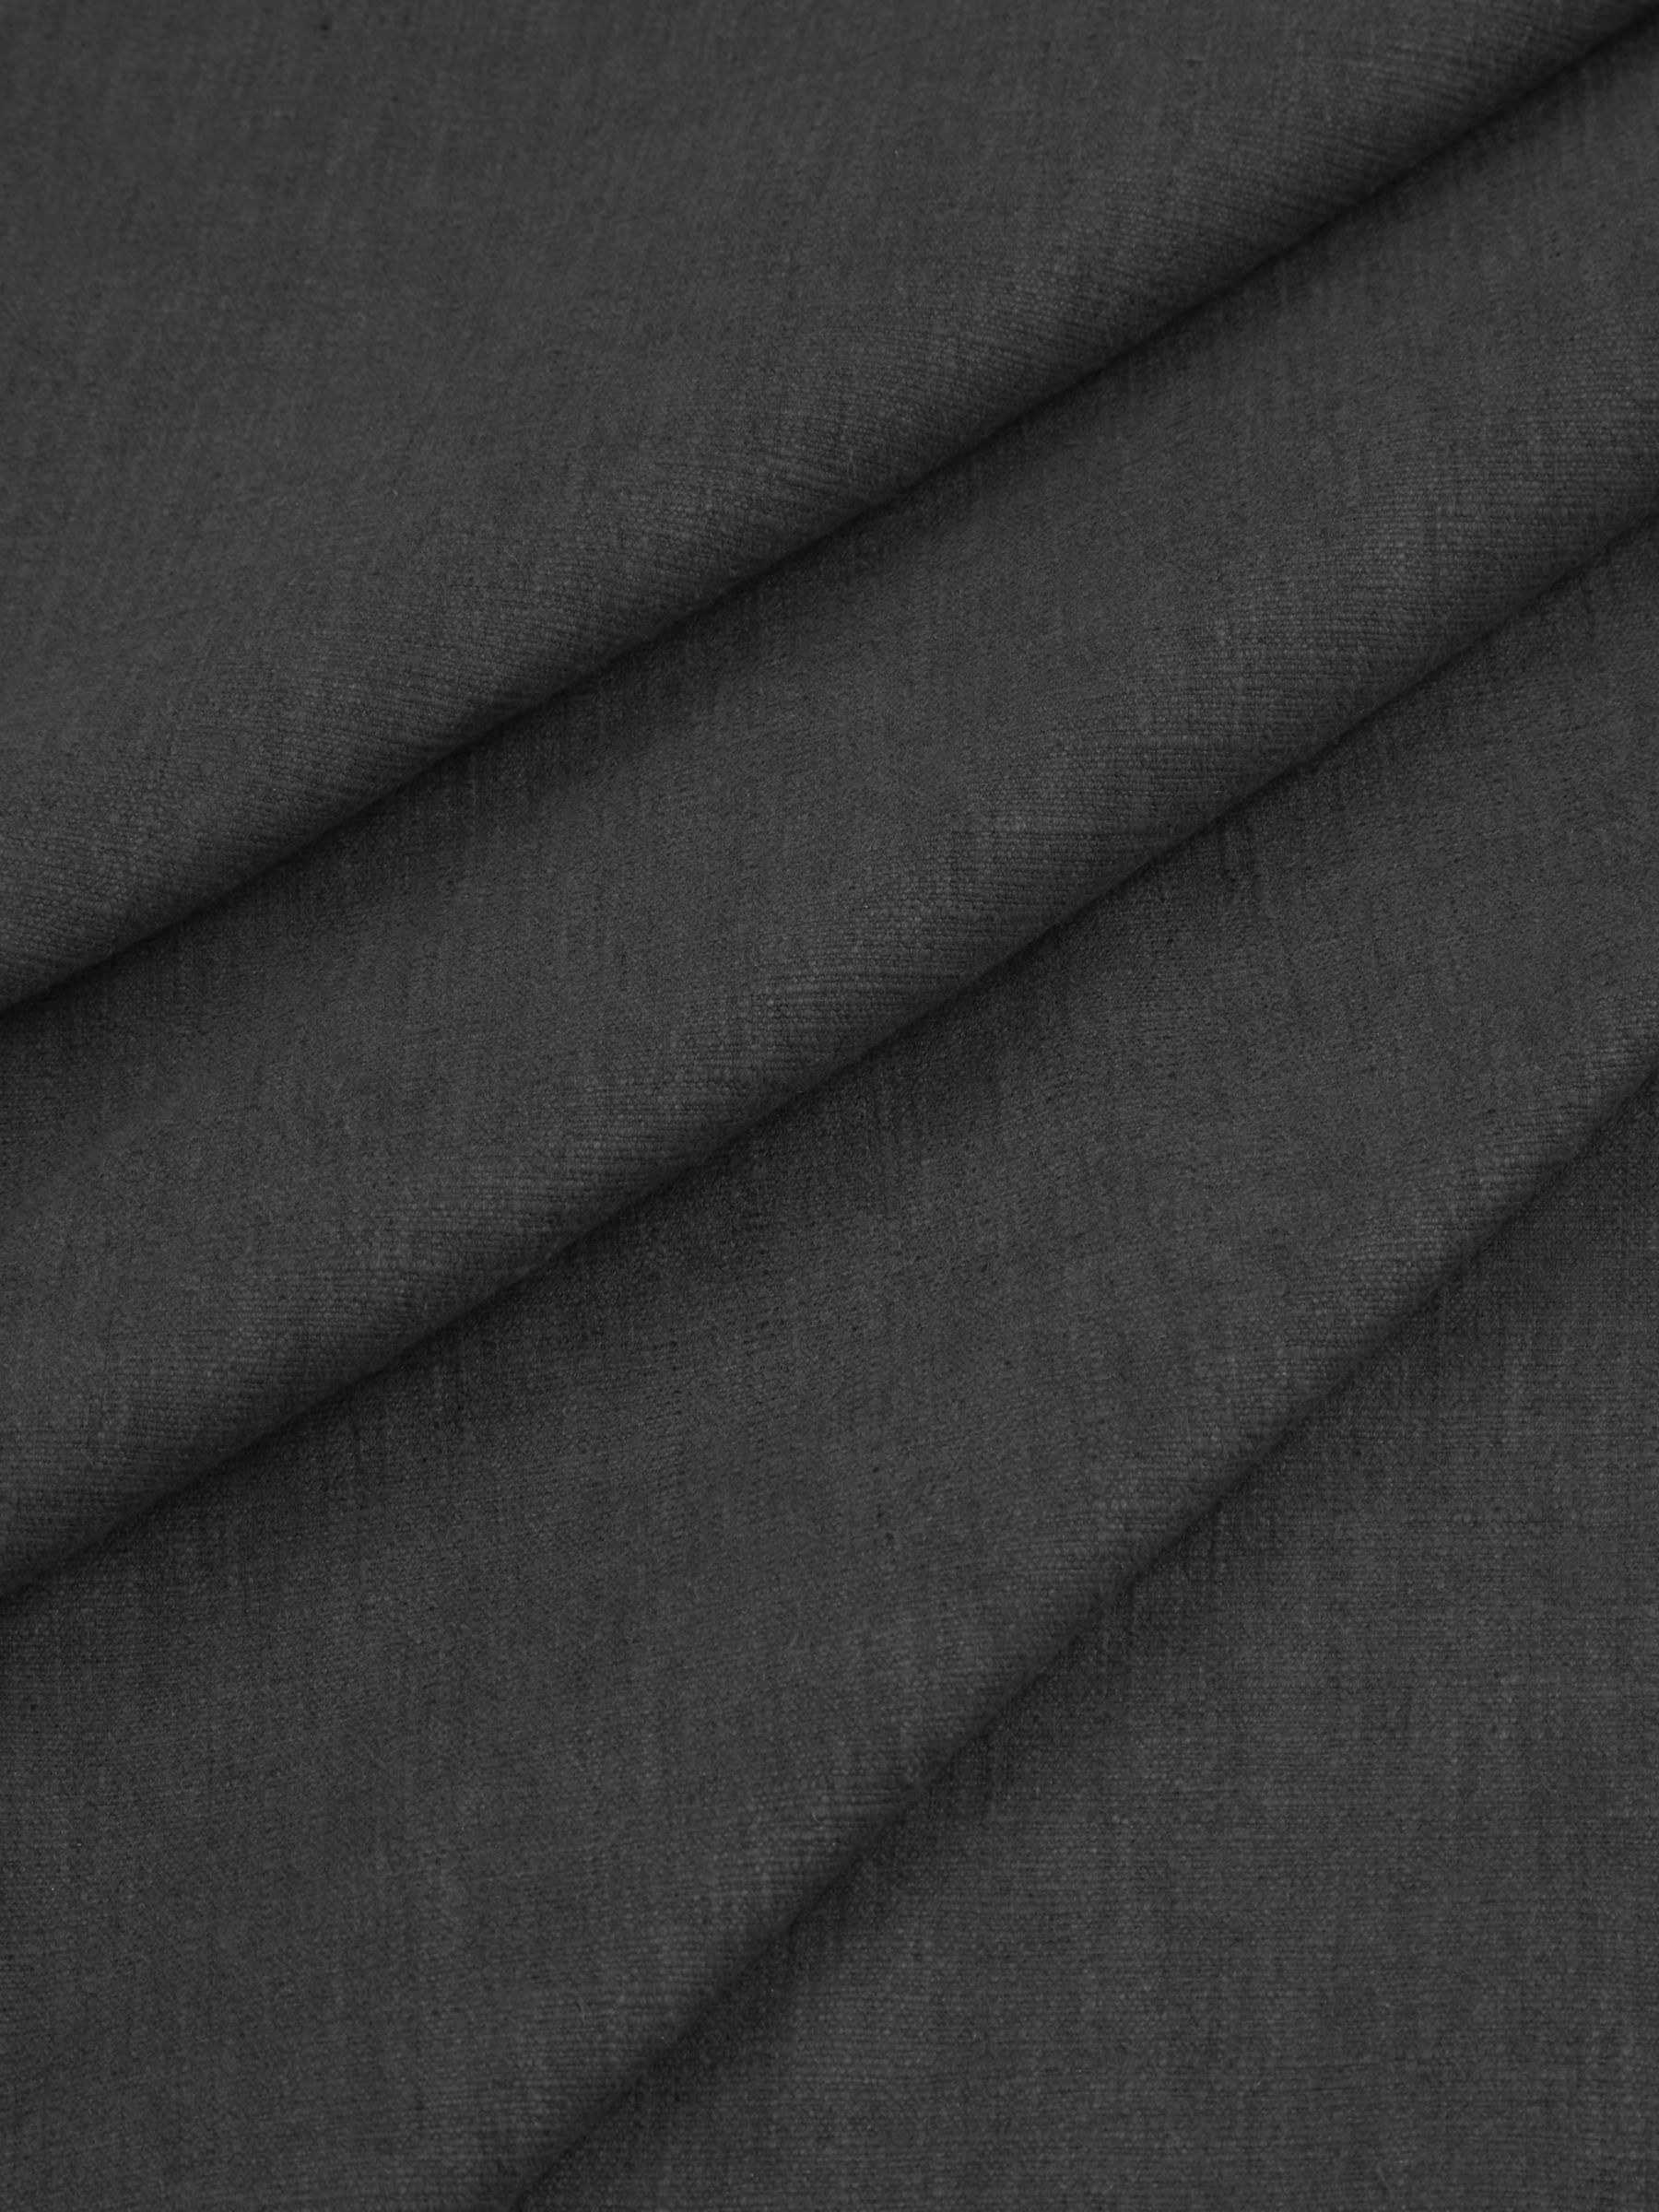 John Lewis Cotton Blend Furnishing Fabric, Graphite